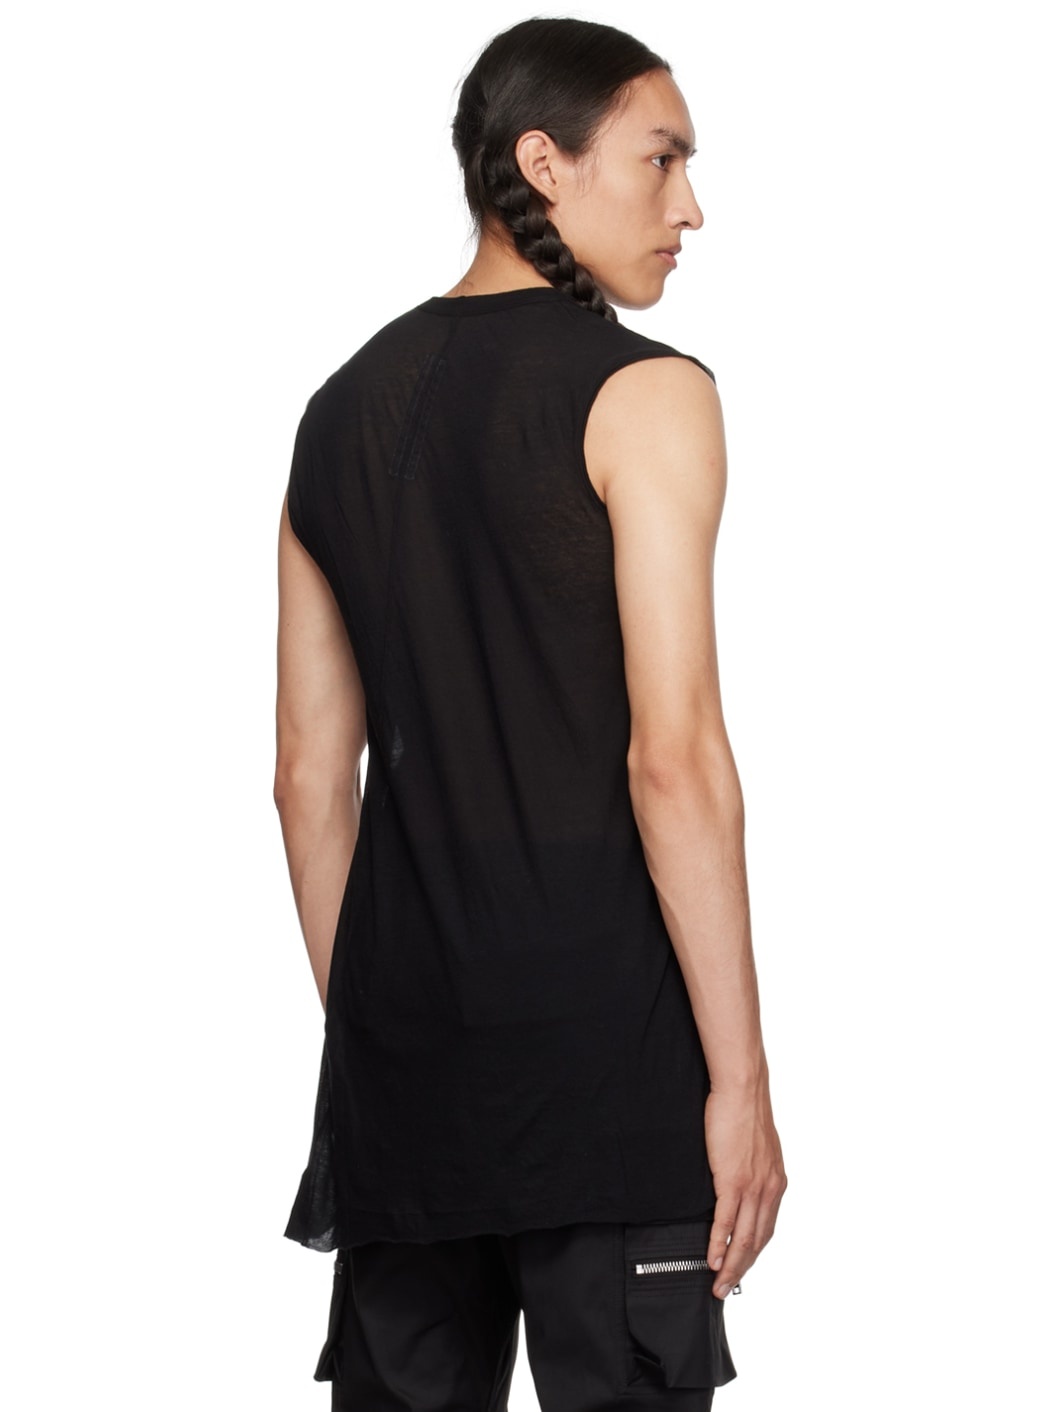 Black Basic T-Shirt - 3